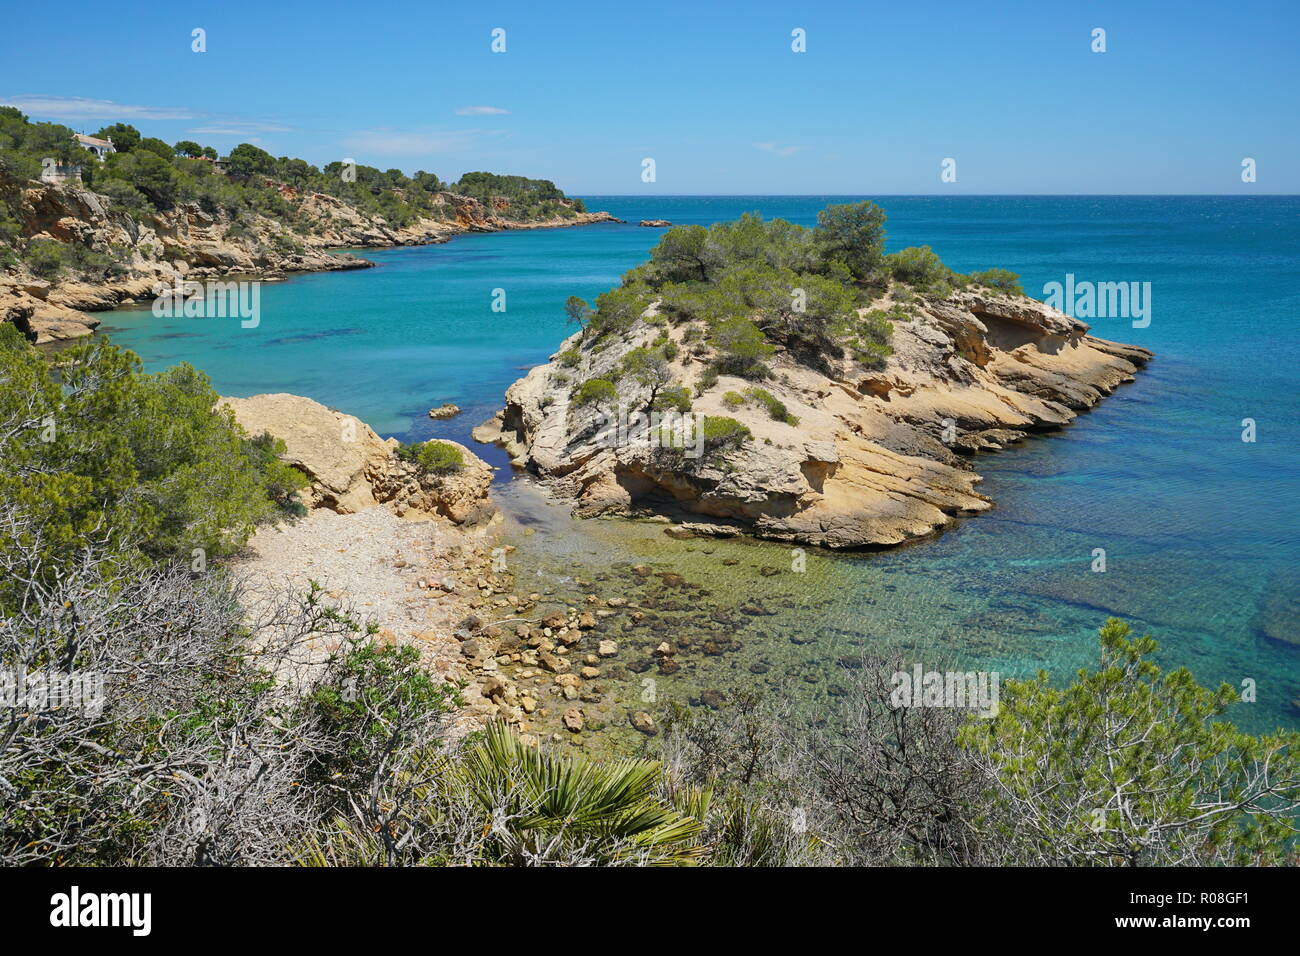 Espagne Costa Dorada, côte rocheuse avec un îlot, l'Illot, mer Méditerranée, la Catalogne, L'Ametlla de Mar, Tarragona Banque D'Images